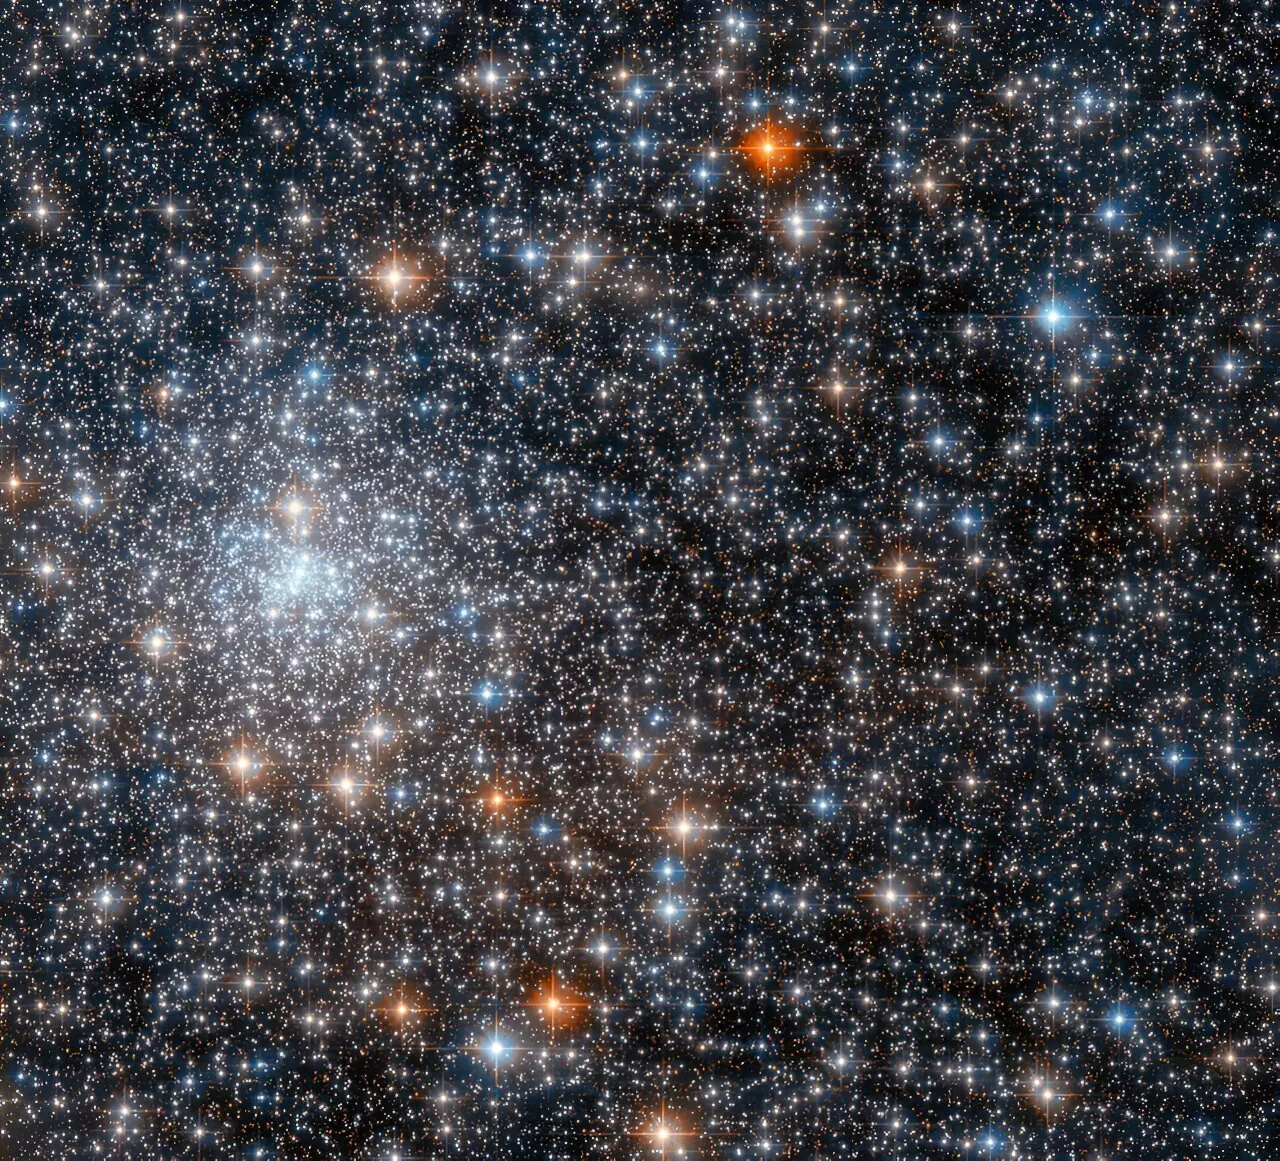 Kuglasti skup NGC 6558 snimljen Svemirskim teleskopom Hubble. Zasluge: ESA/Hubble i NASA, R. Cohen.